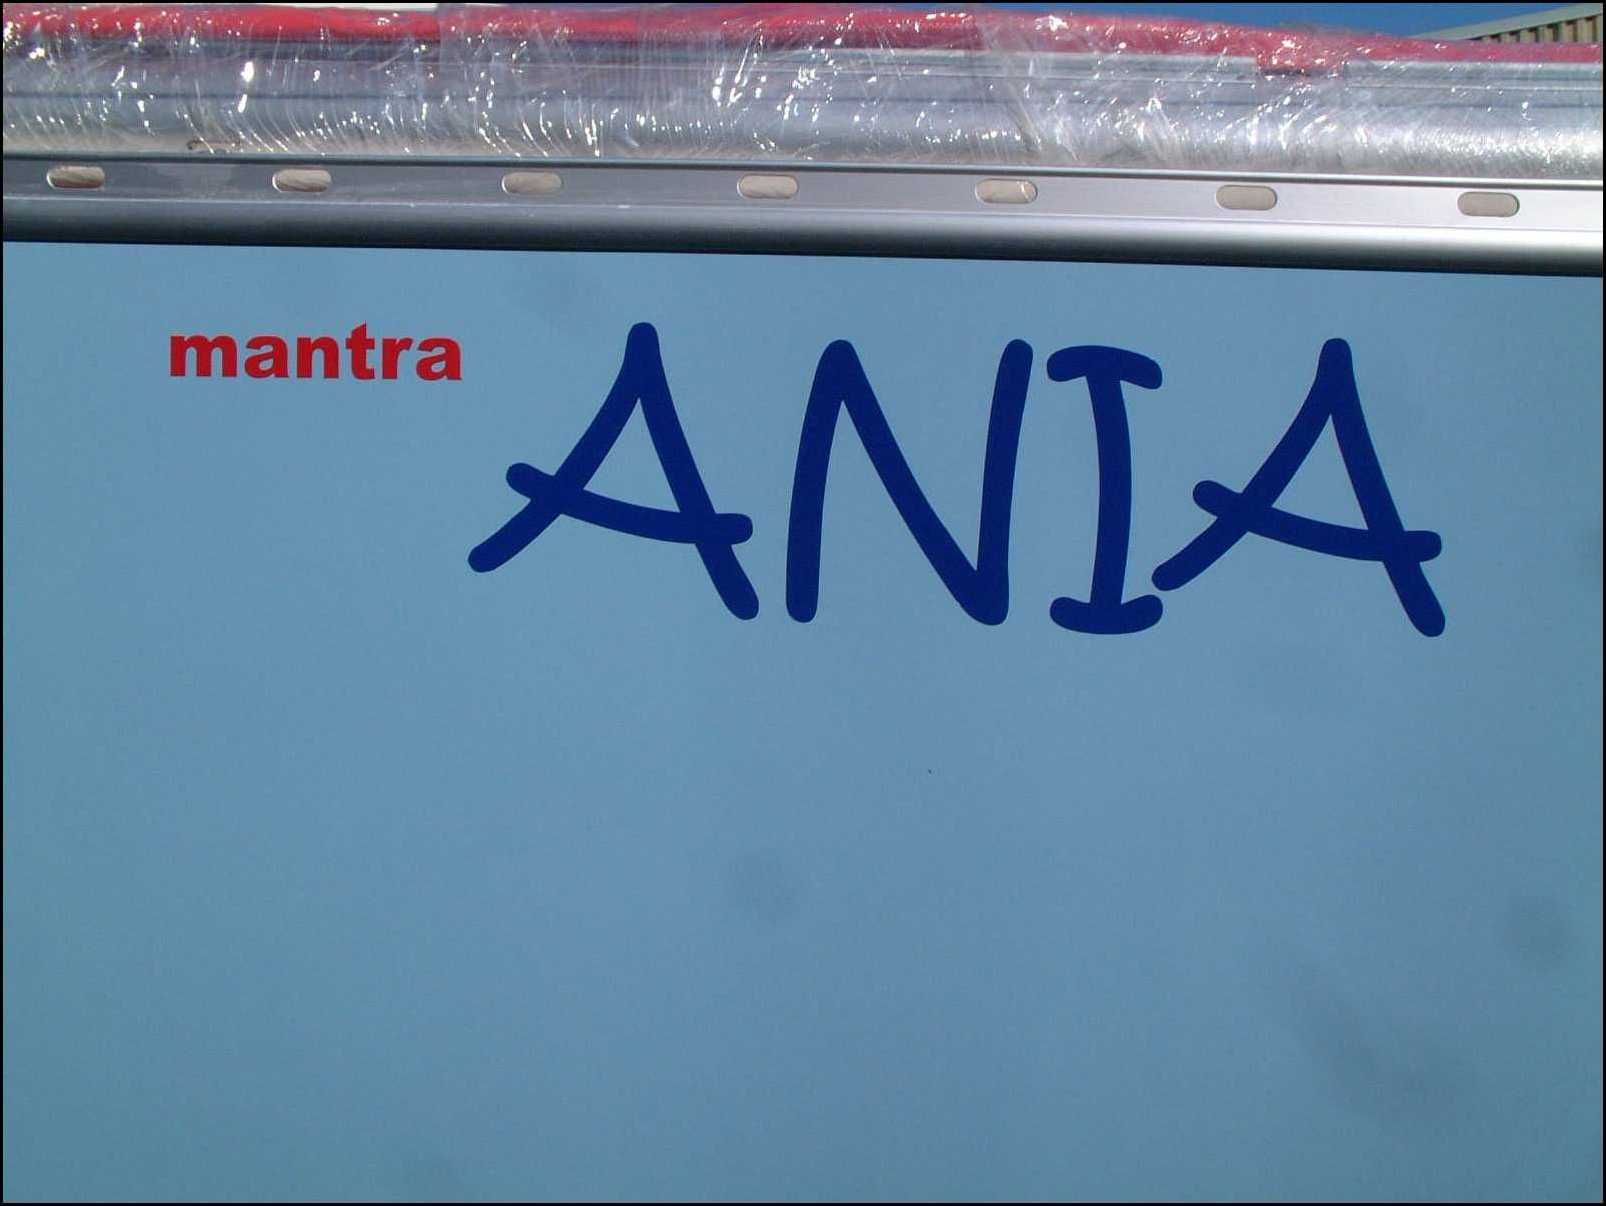 Mantra Ania